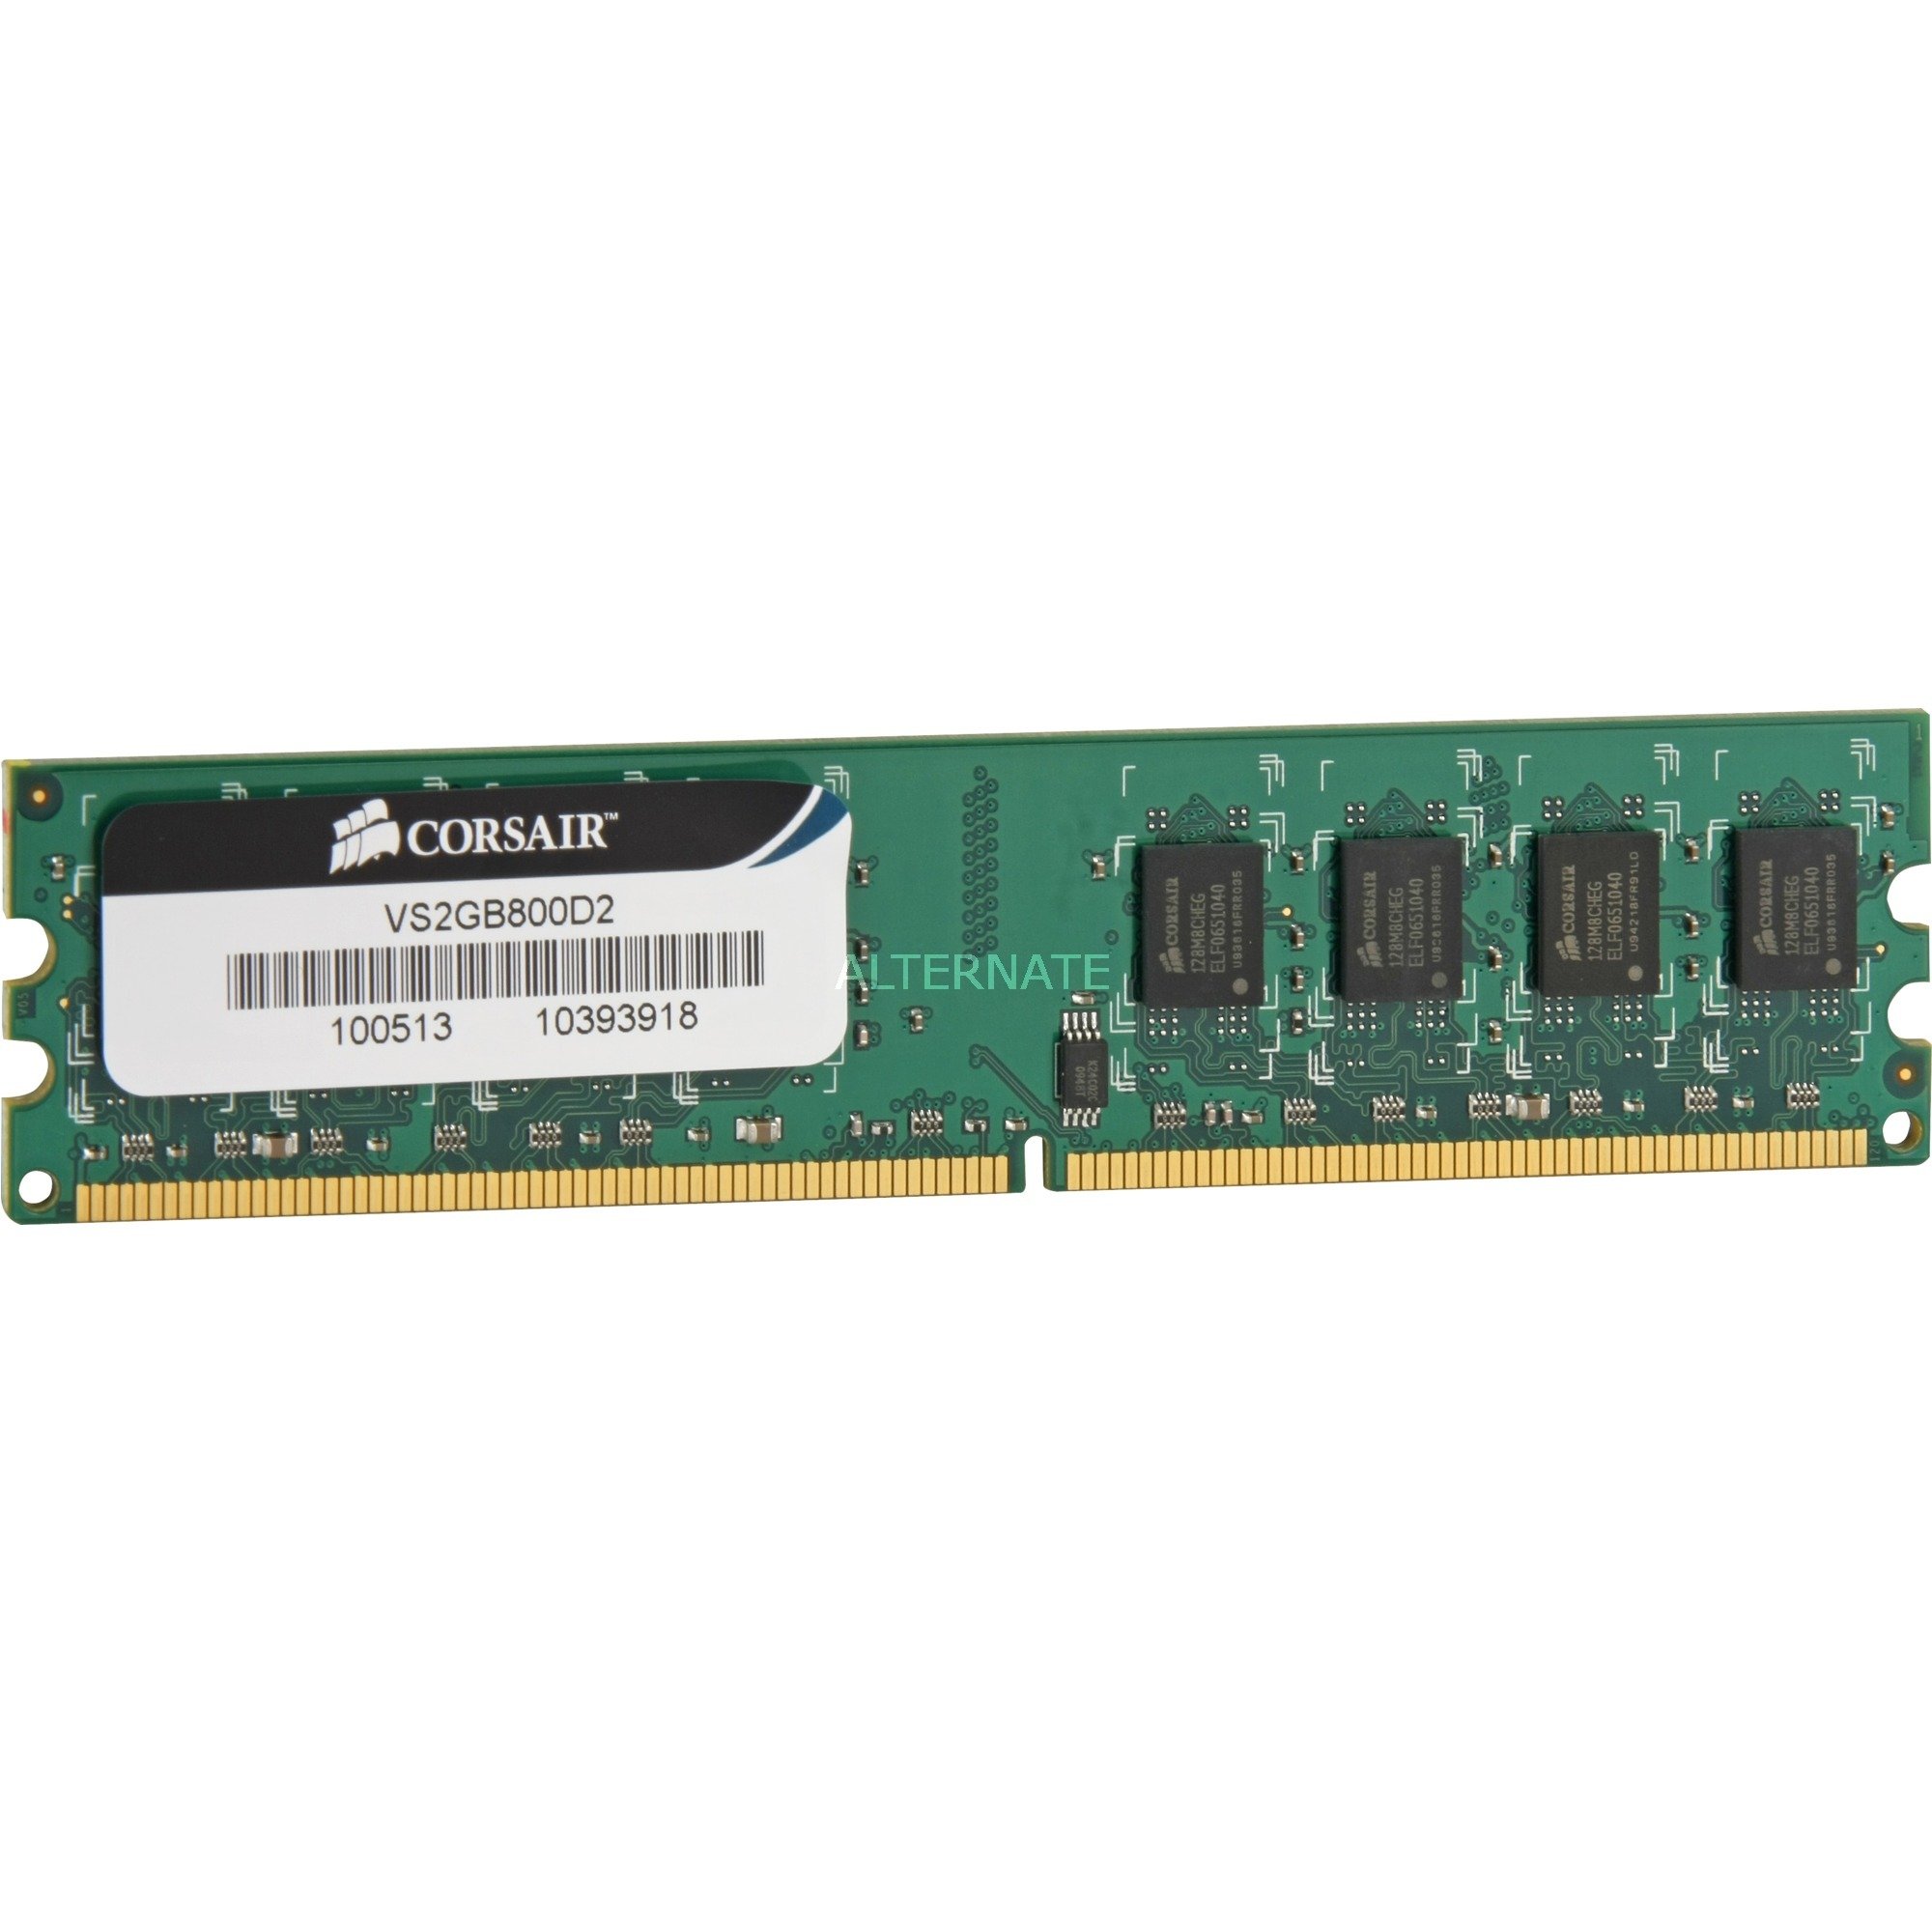 VS2GB800D2G 2GB DDR2 800Mhz moduł pamięci, Pamięc operacyjna